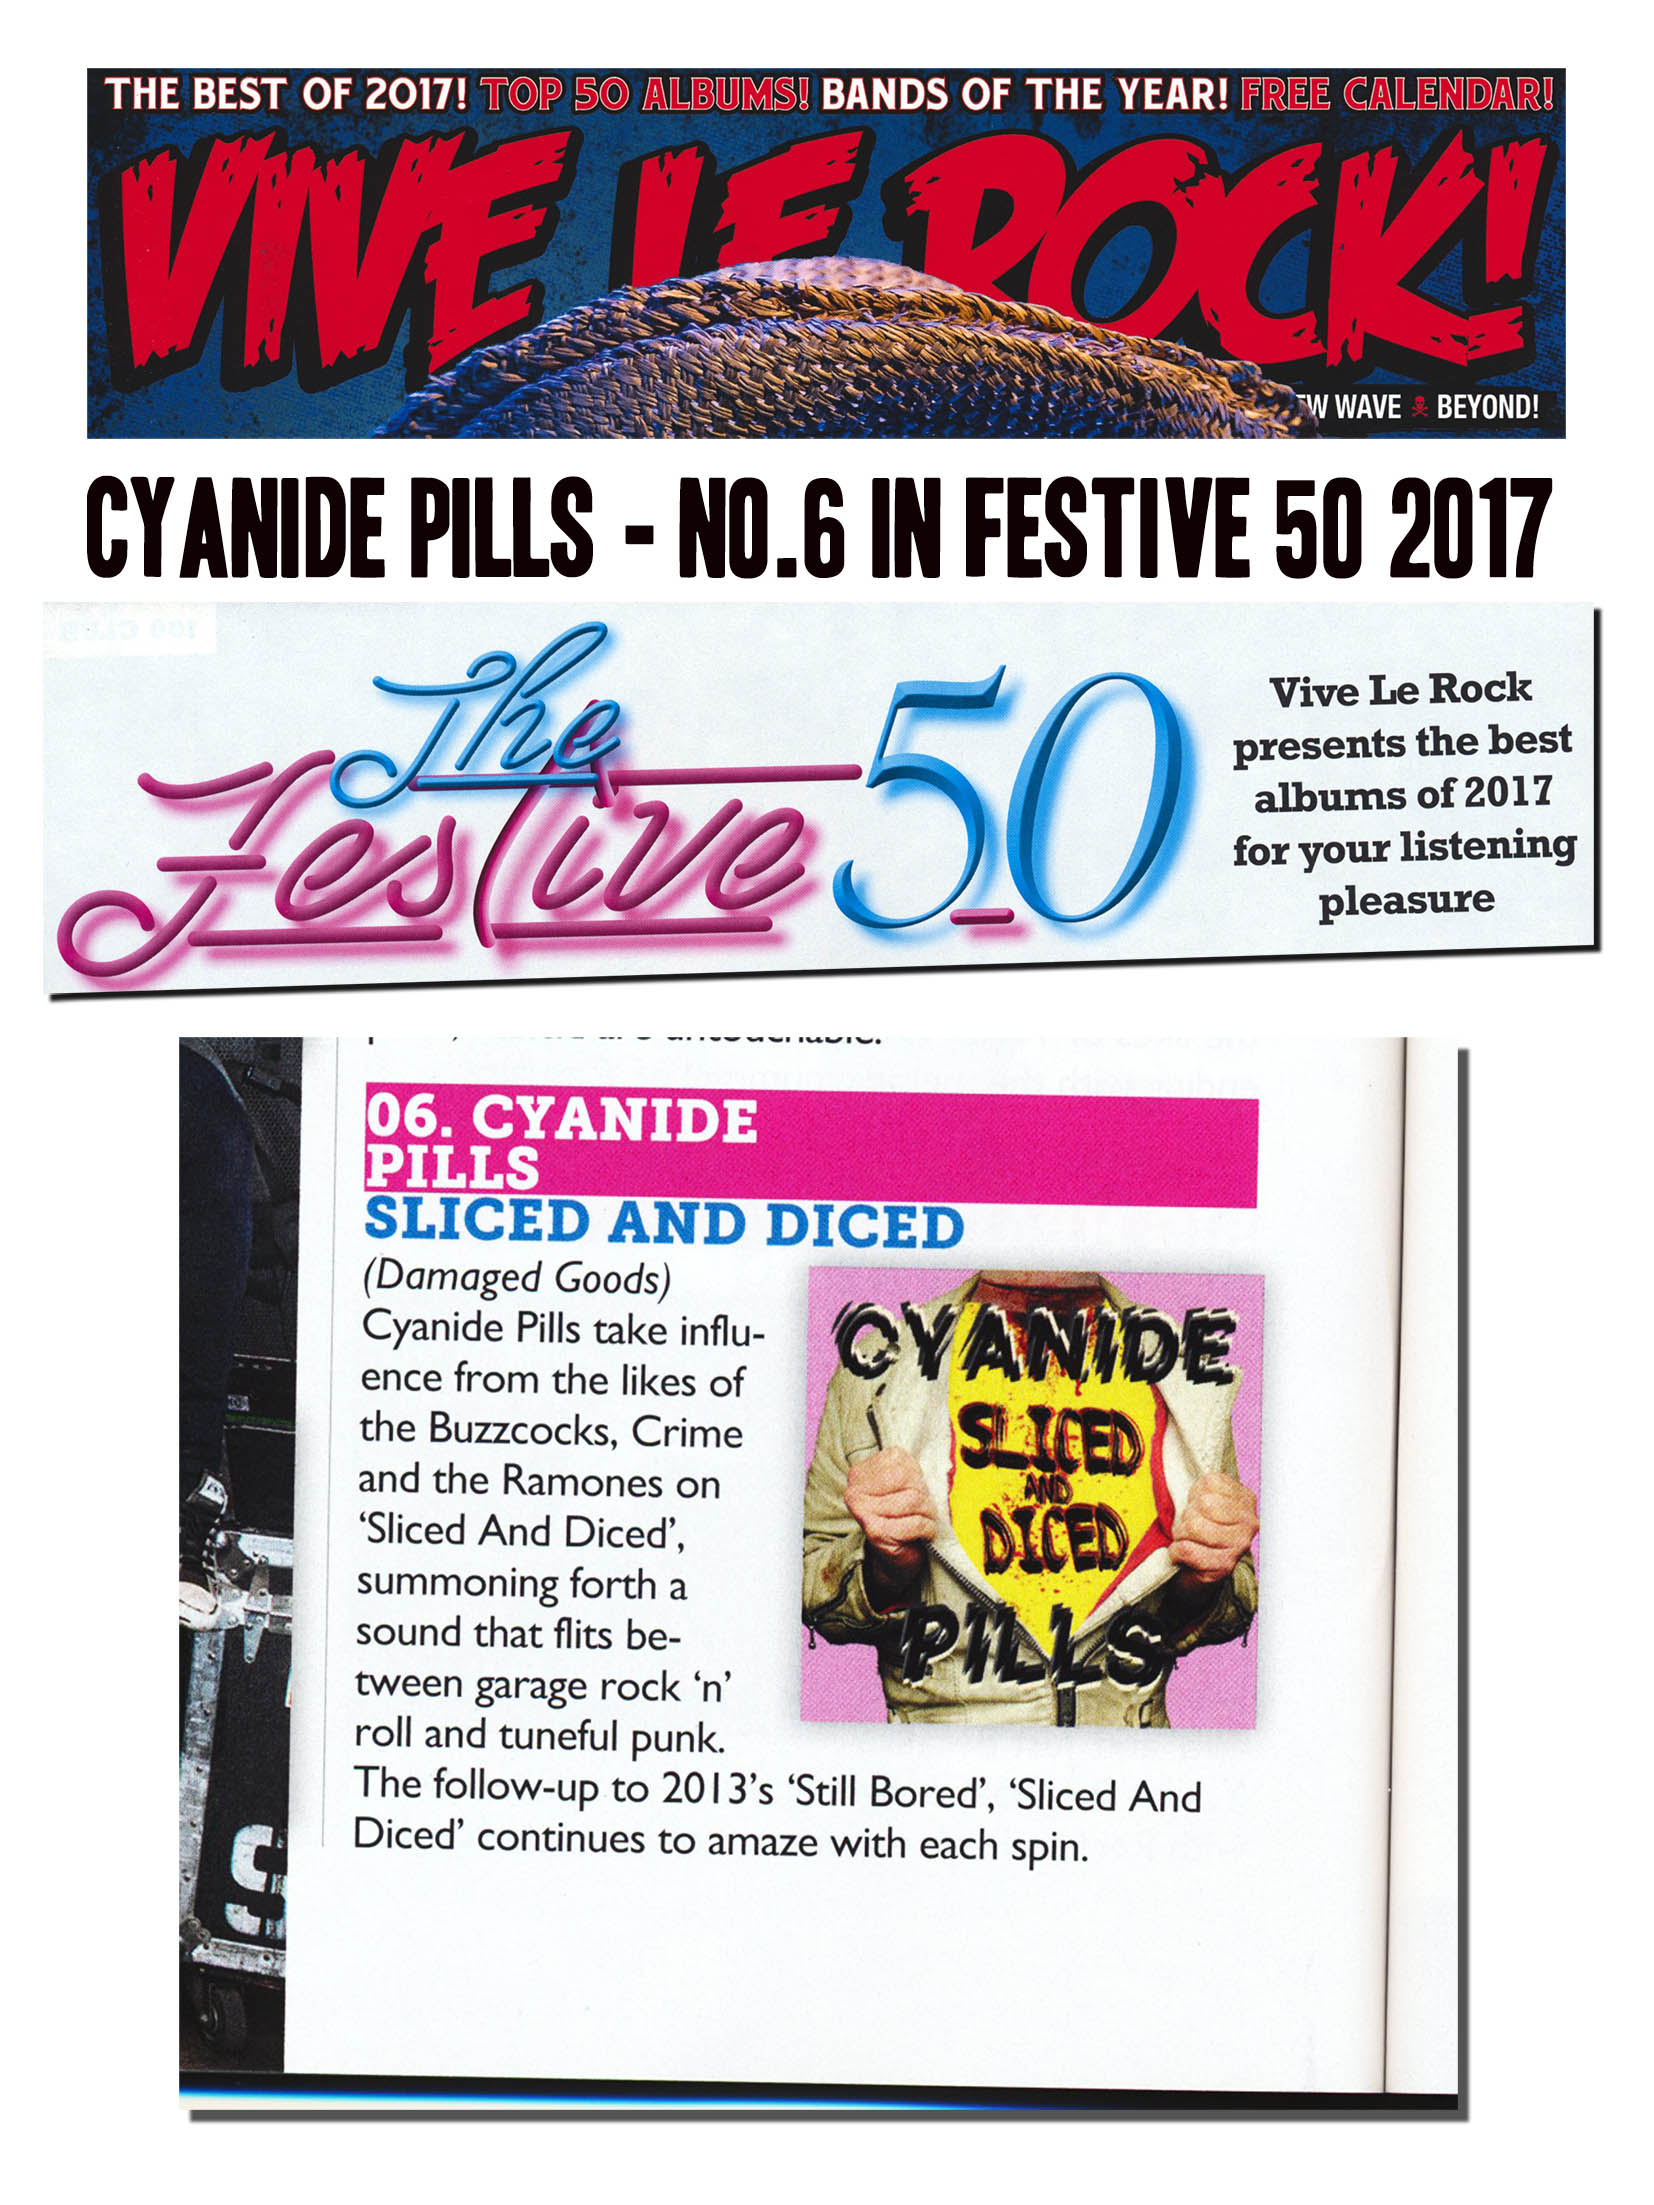 september forræder Colonial Cyanide Pills album - Vive Le Rock's Top 50! - Damaged Goods